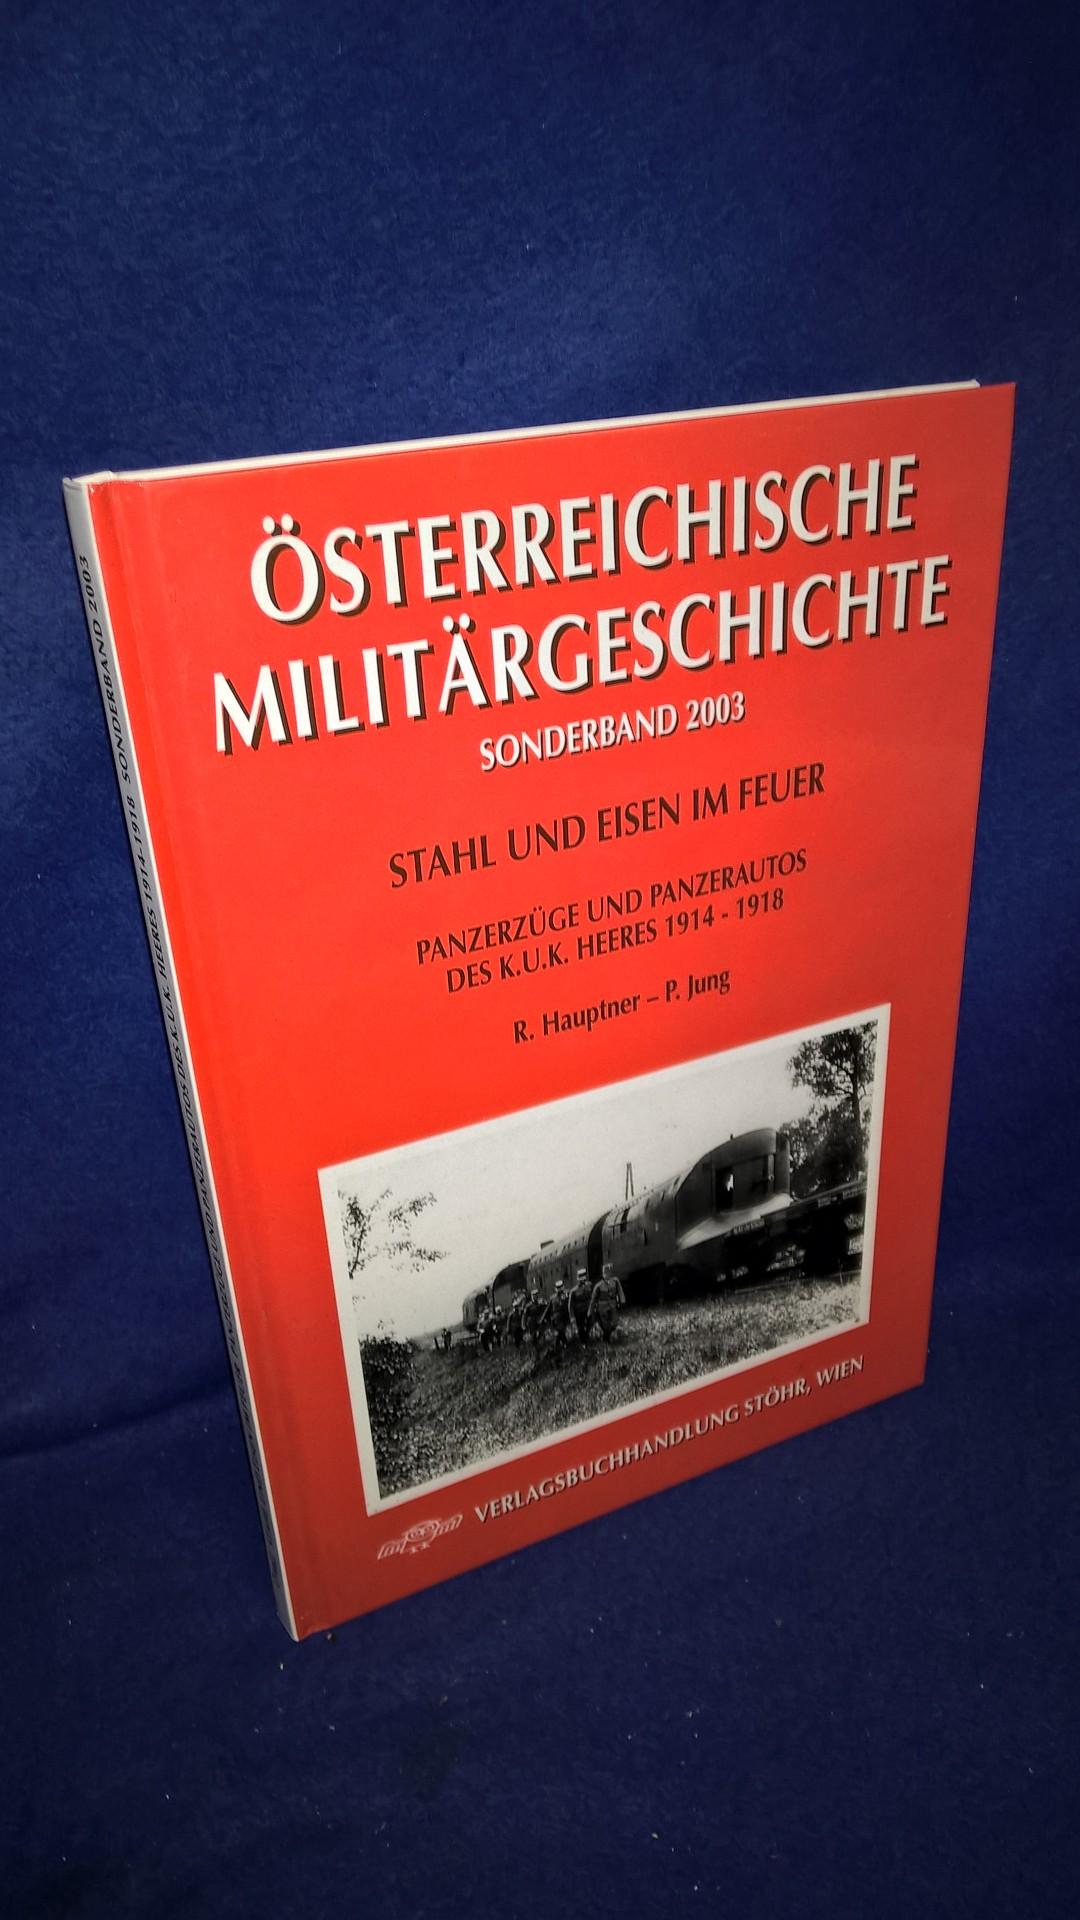 Österreichische Militärgeschichte, Sonderband 2003: Stahl und Eisen im Feuer. Panzerzüge und Panzerautos des K.u.K. Heeres 1914-1918.